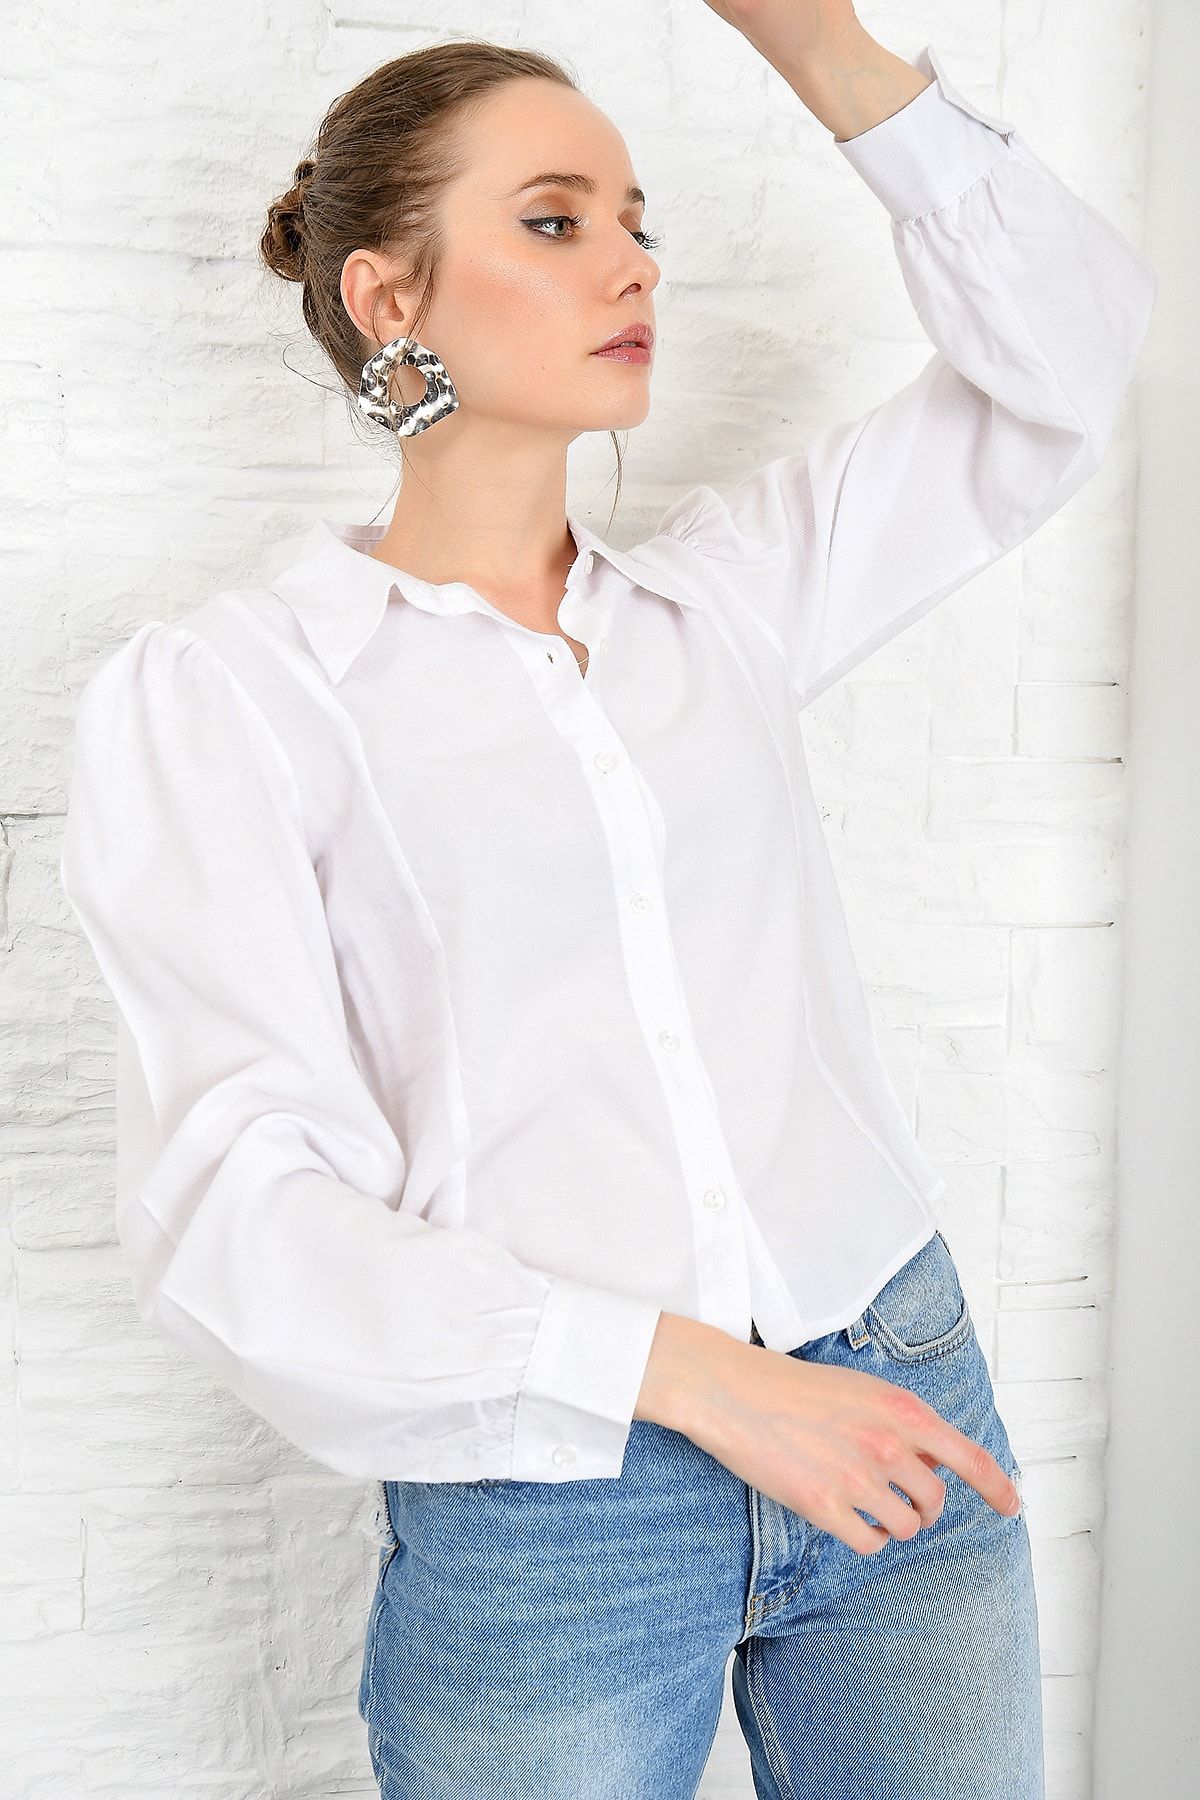 Trend Alaçatı Stili Kadın Beyaz Dokuma Gömlek DNZ-3160